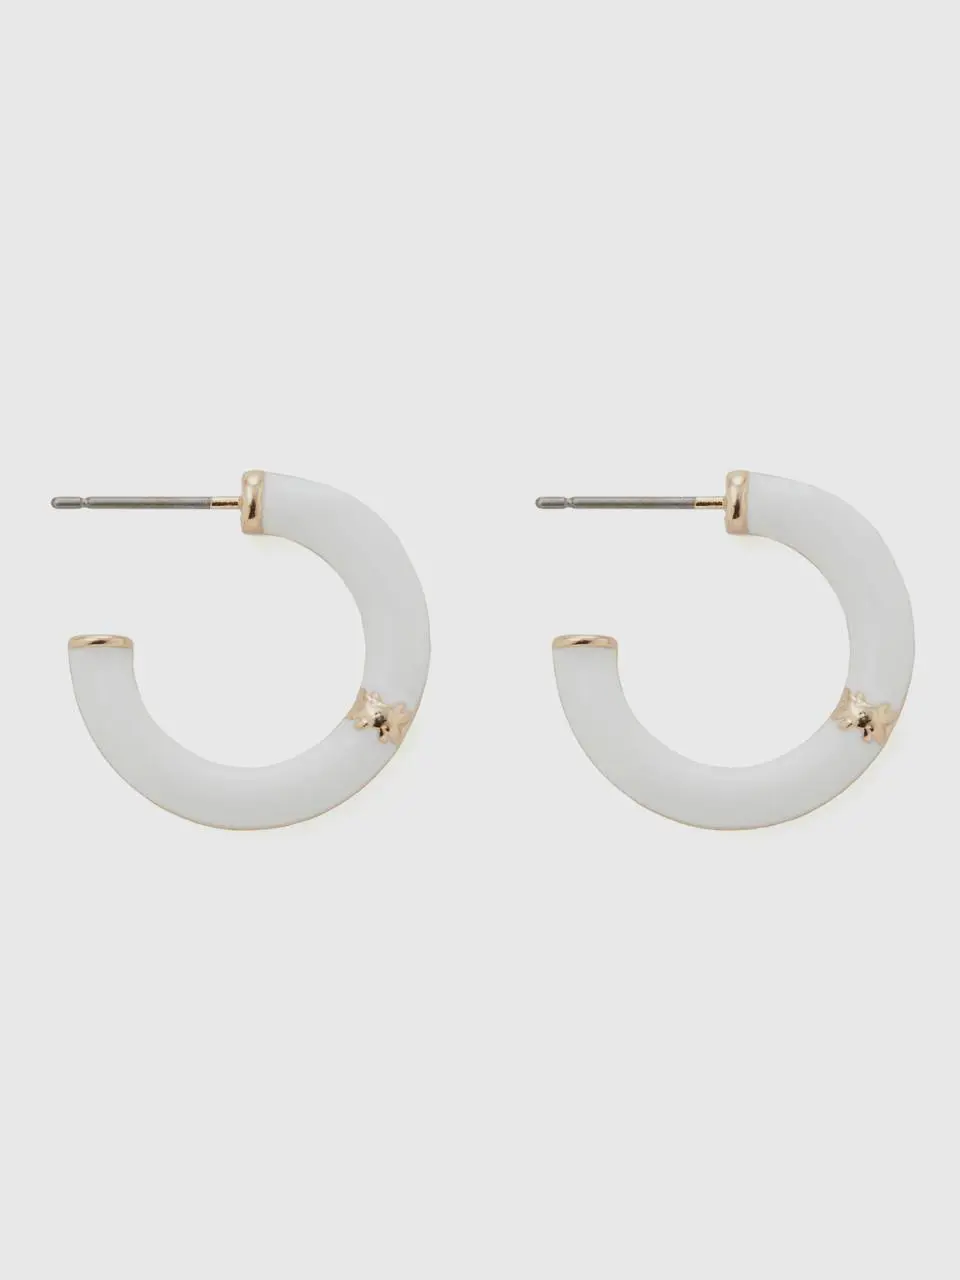 Benetton white c hoop earrings. 1